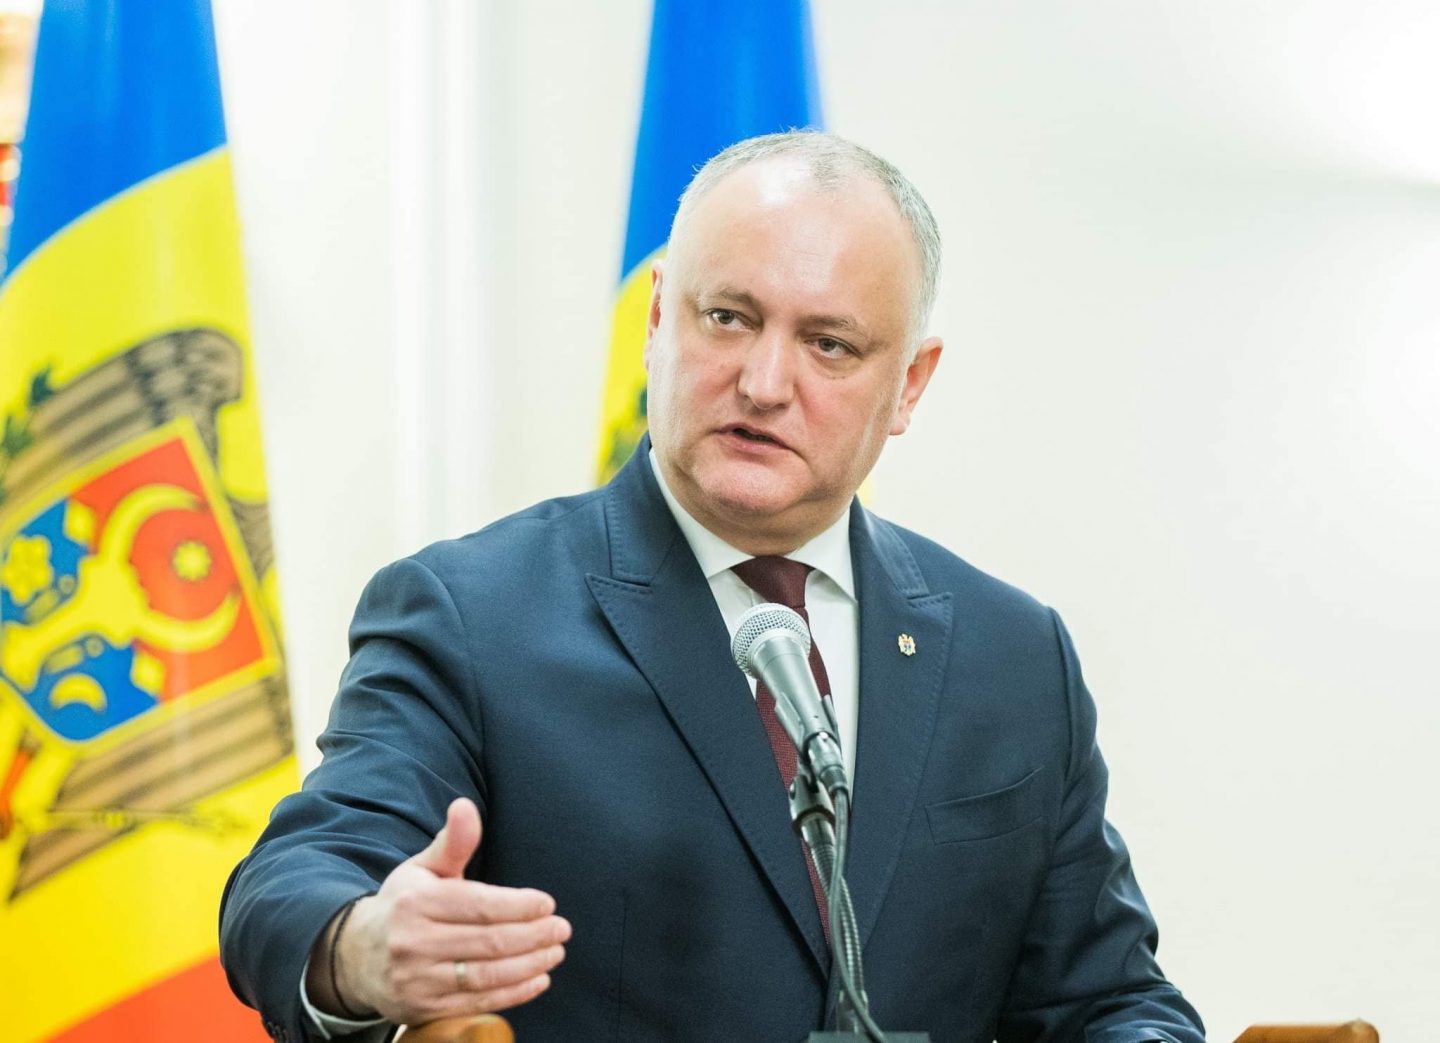 Dodon vede peste 10 ani Moldova ca o țară prosperă, independentă, dezvoltată economic, neutră, reintegrată teritorial și cu o politică externă echilibrată